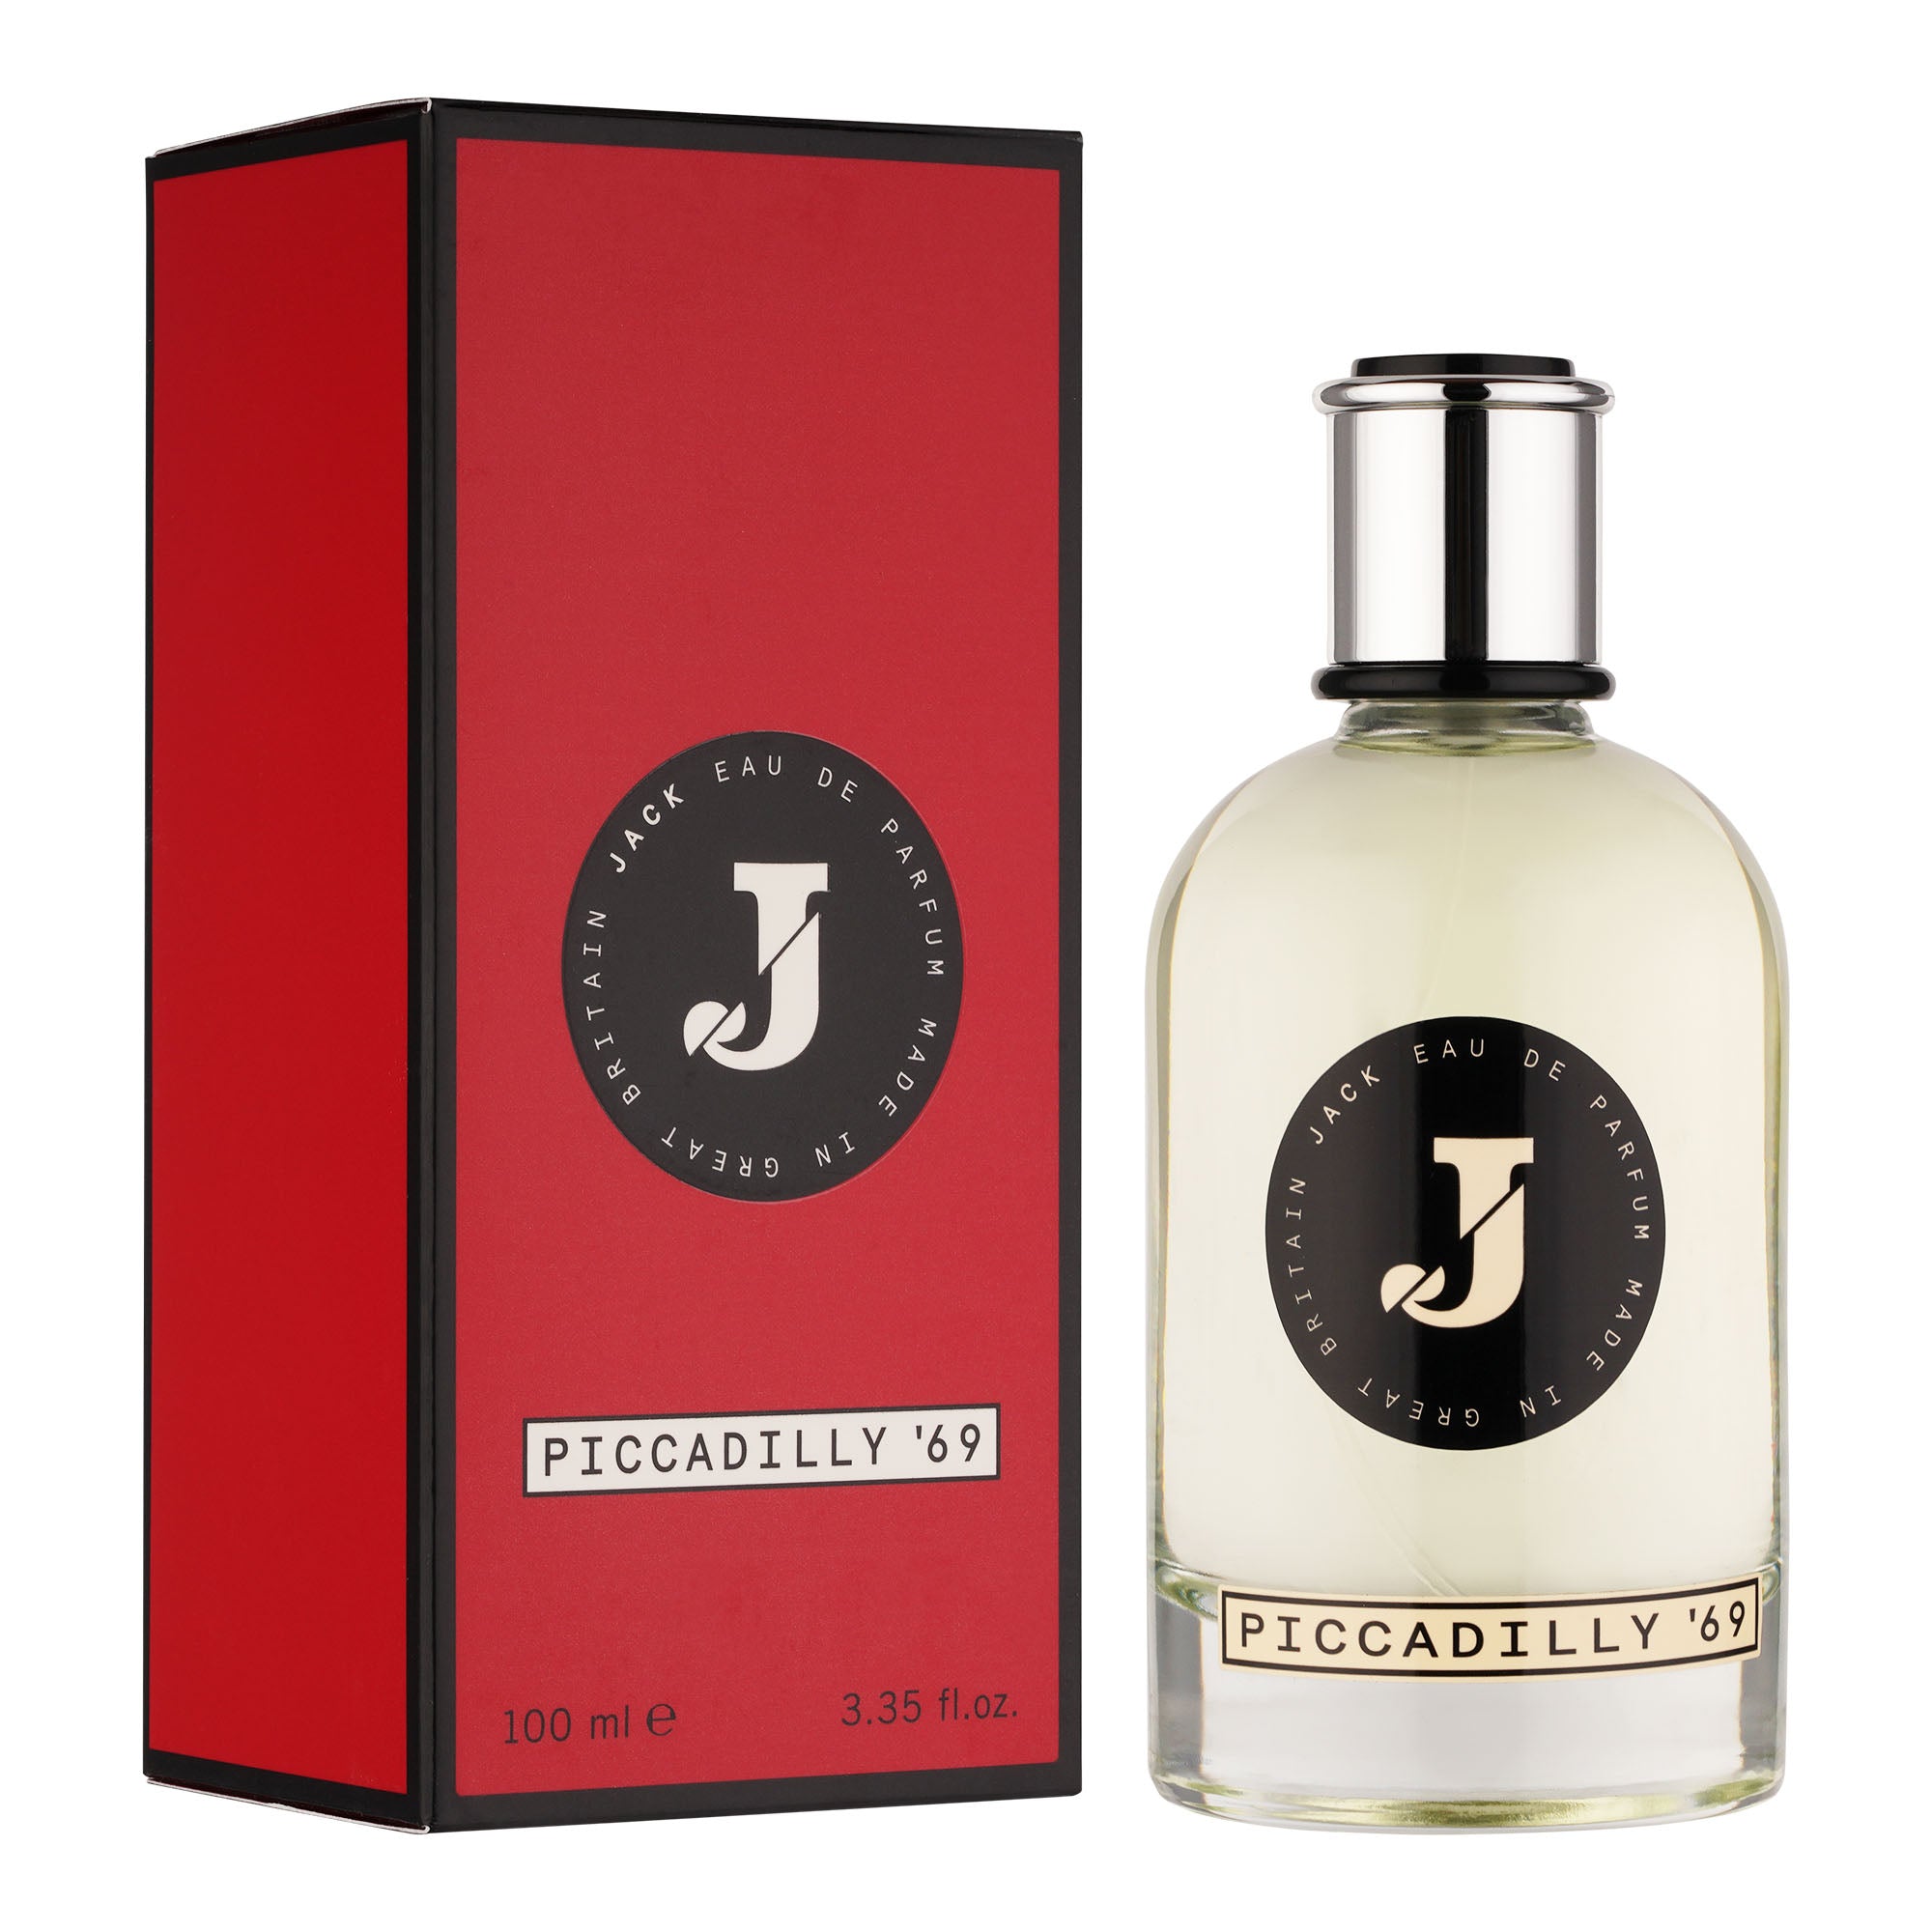 Jack Perfume Piccadilly '69 - Eau de Parfum